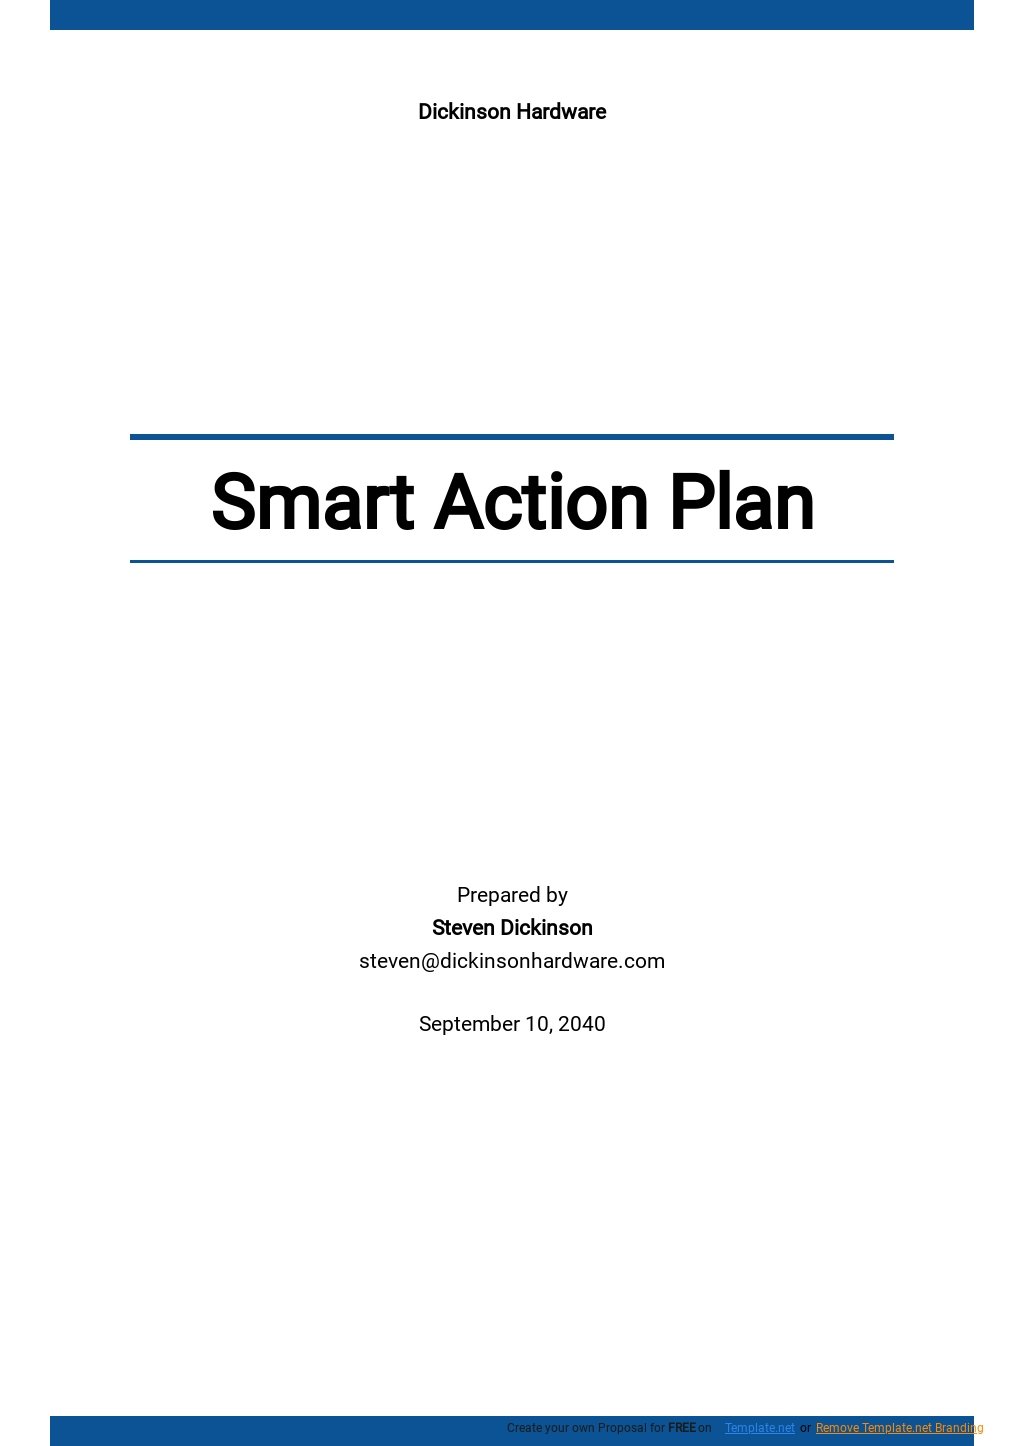 Smart Action Plans